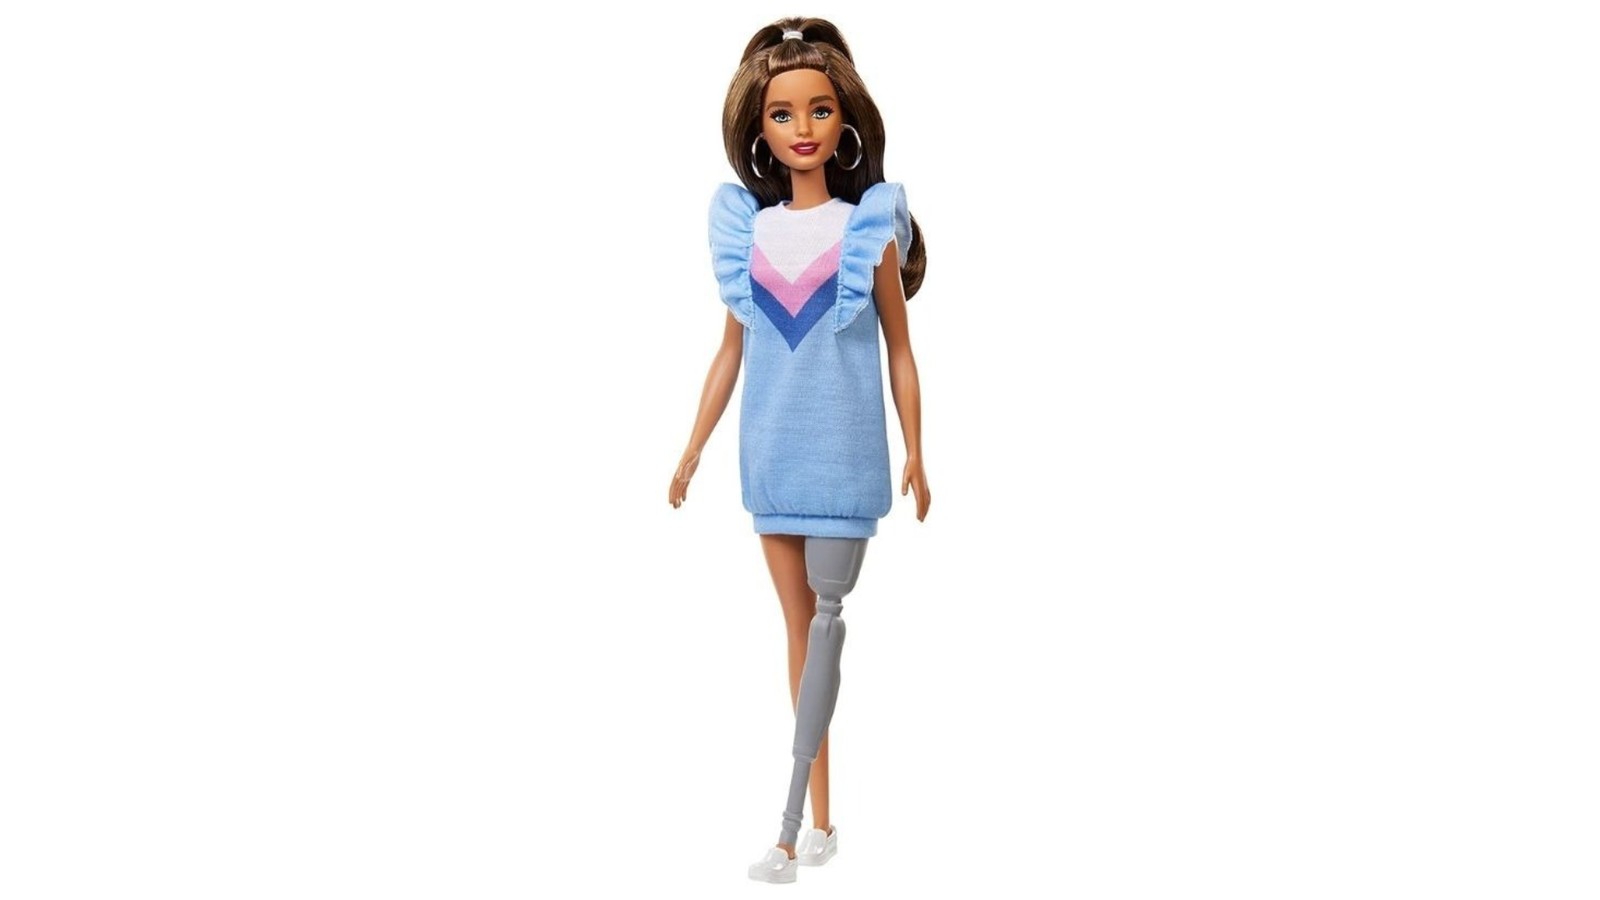 Barbie com prótese na perna. — Foto: Divulgação / Mattel